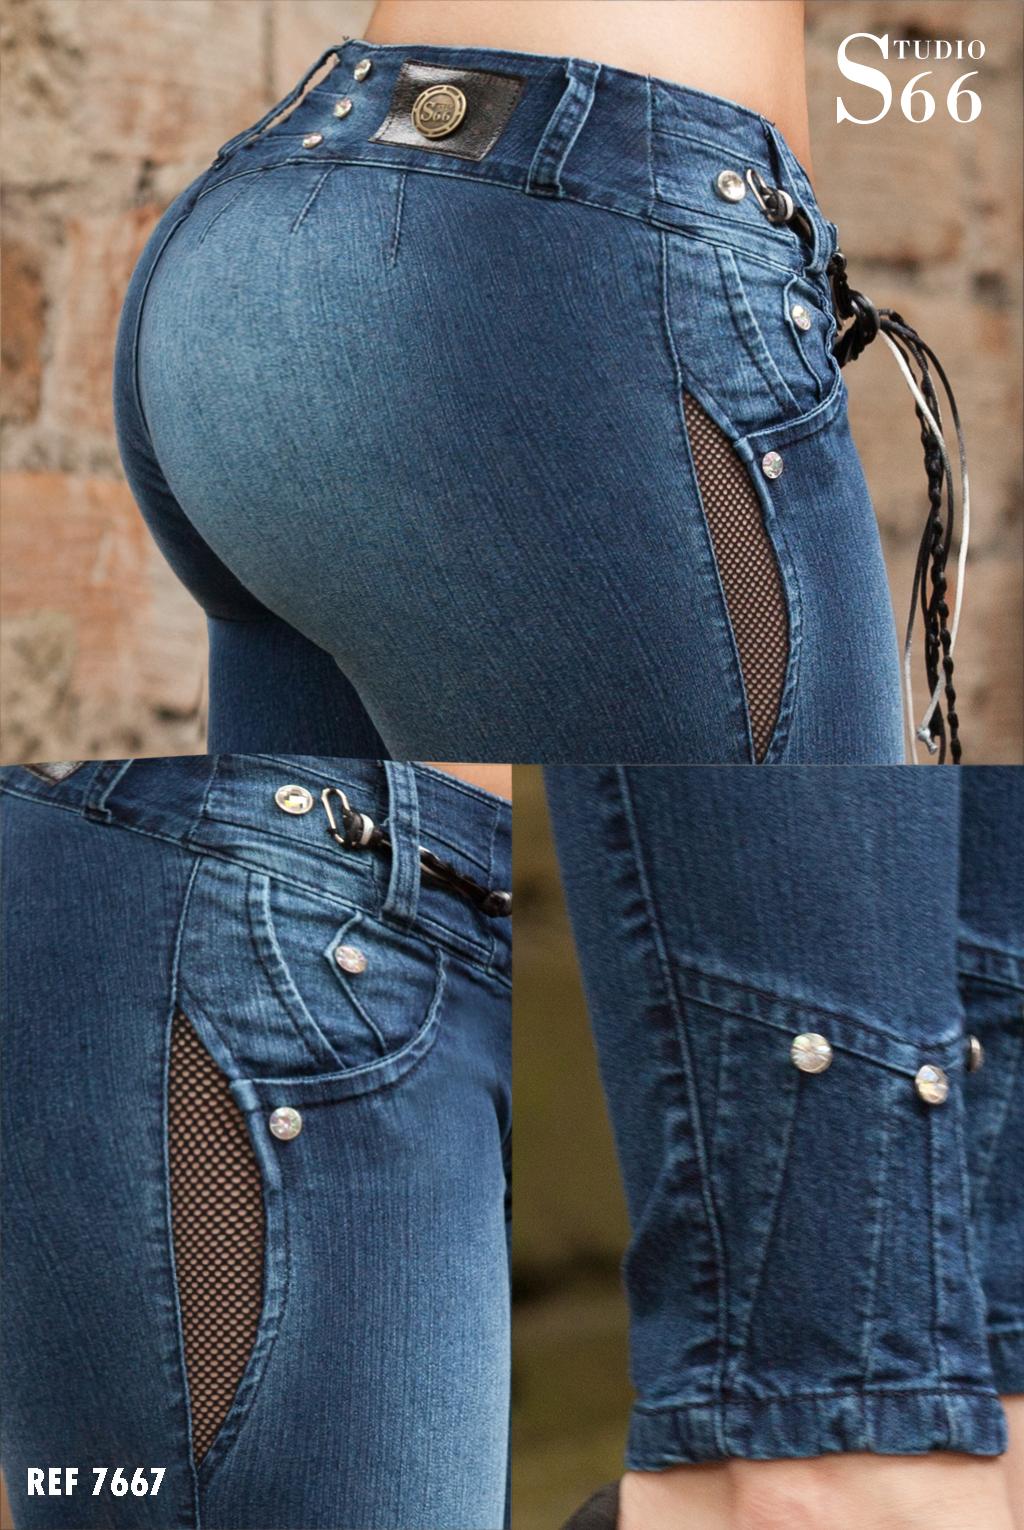 Comprar Jean detalles sexys